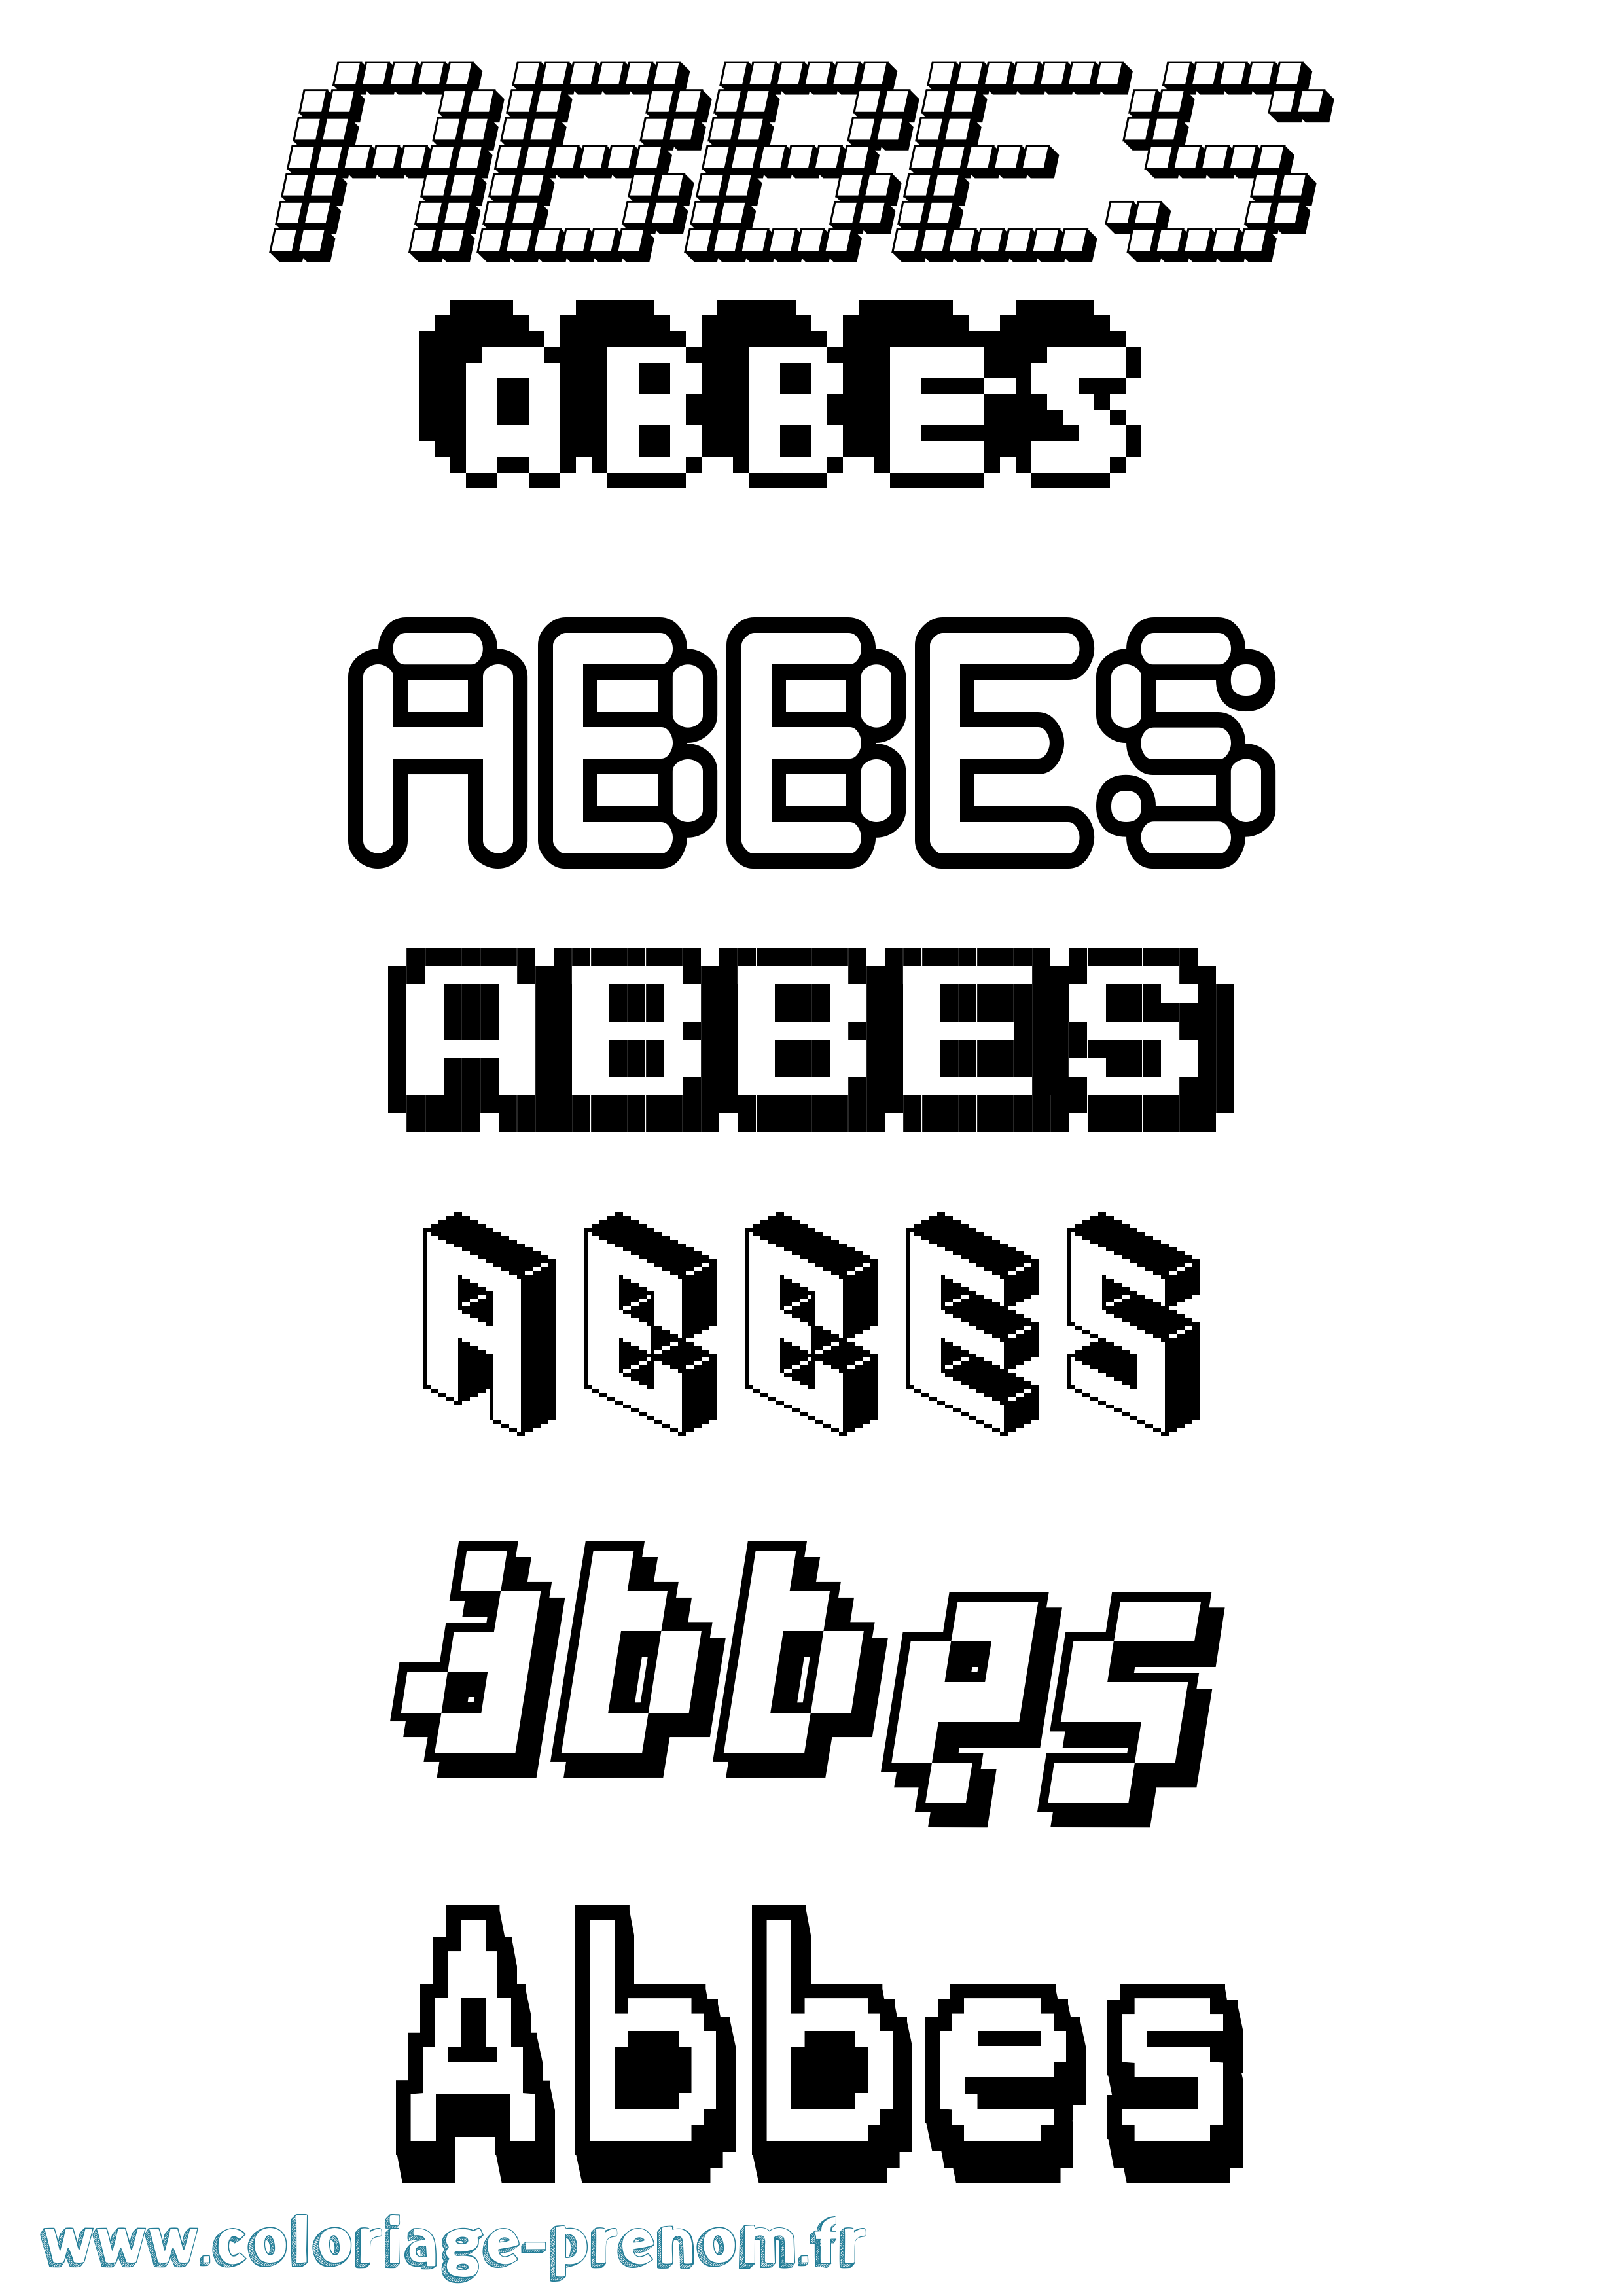 Coloriage prénom Abbes Pixel